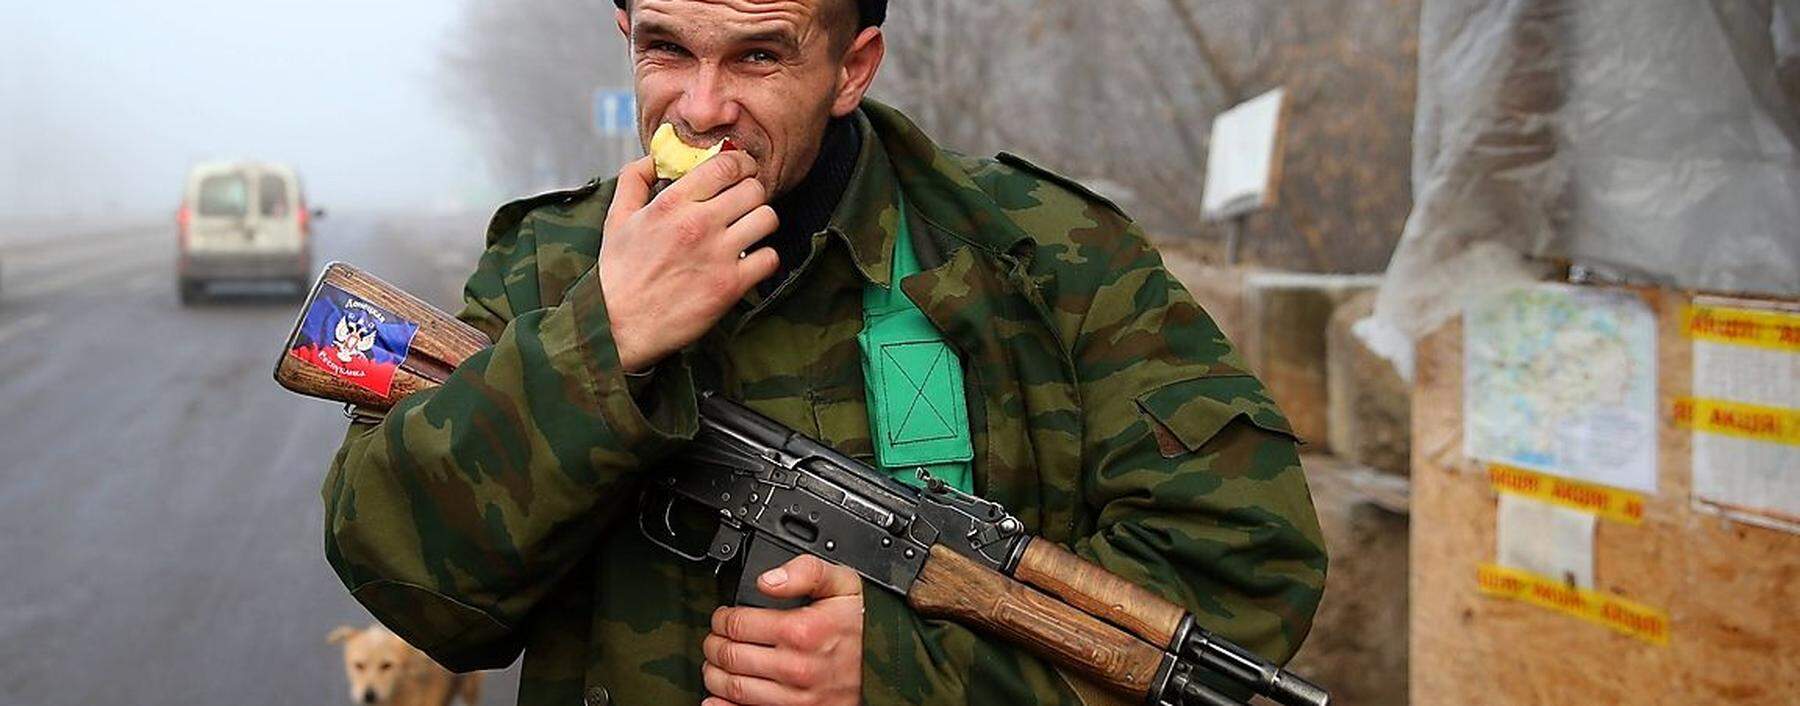 DONETSK REGION UKRAINE DECEMBER 14 2014 An armed member of the Donetsk People s Republic DPR m